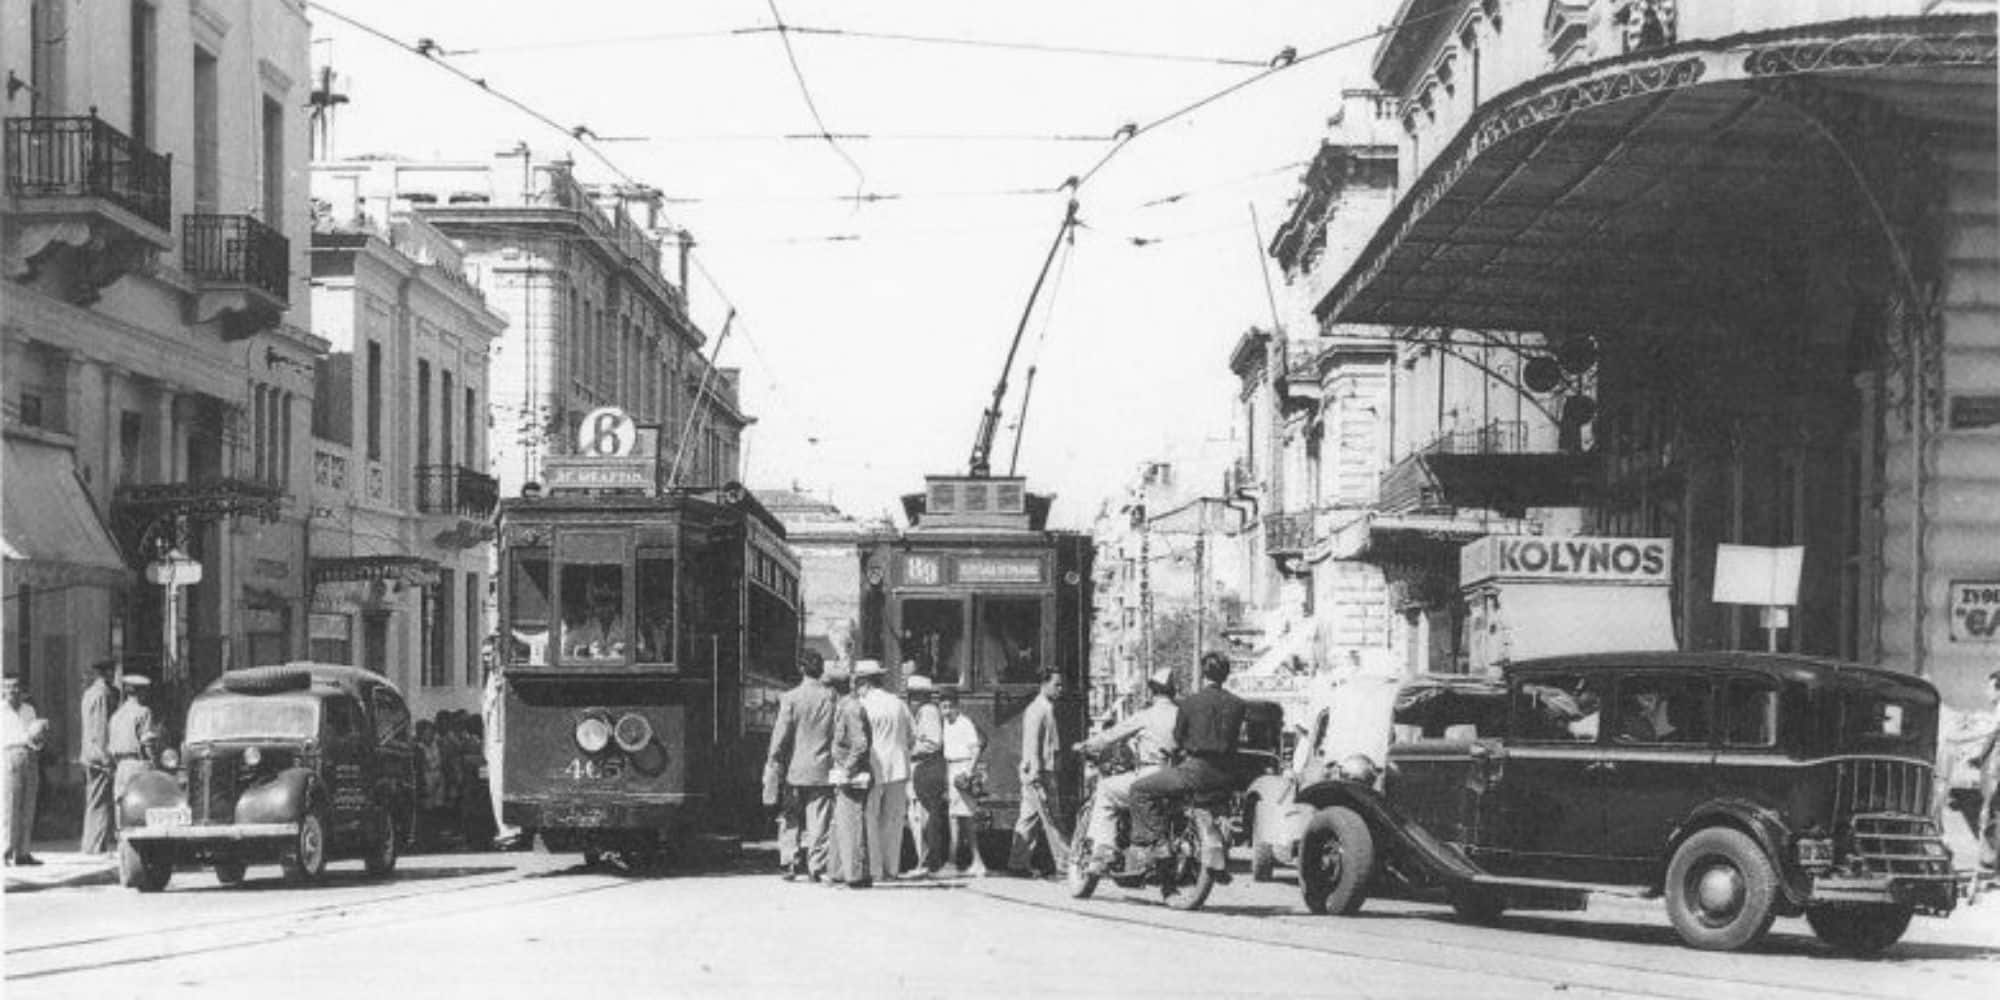 Εικόνα από το τραμ στην Ομόνοια τη δεκαετία του '50